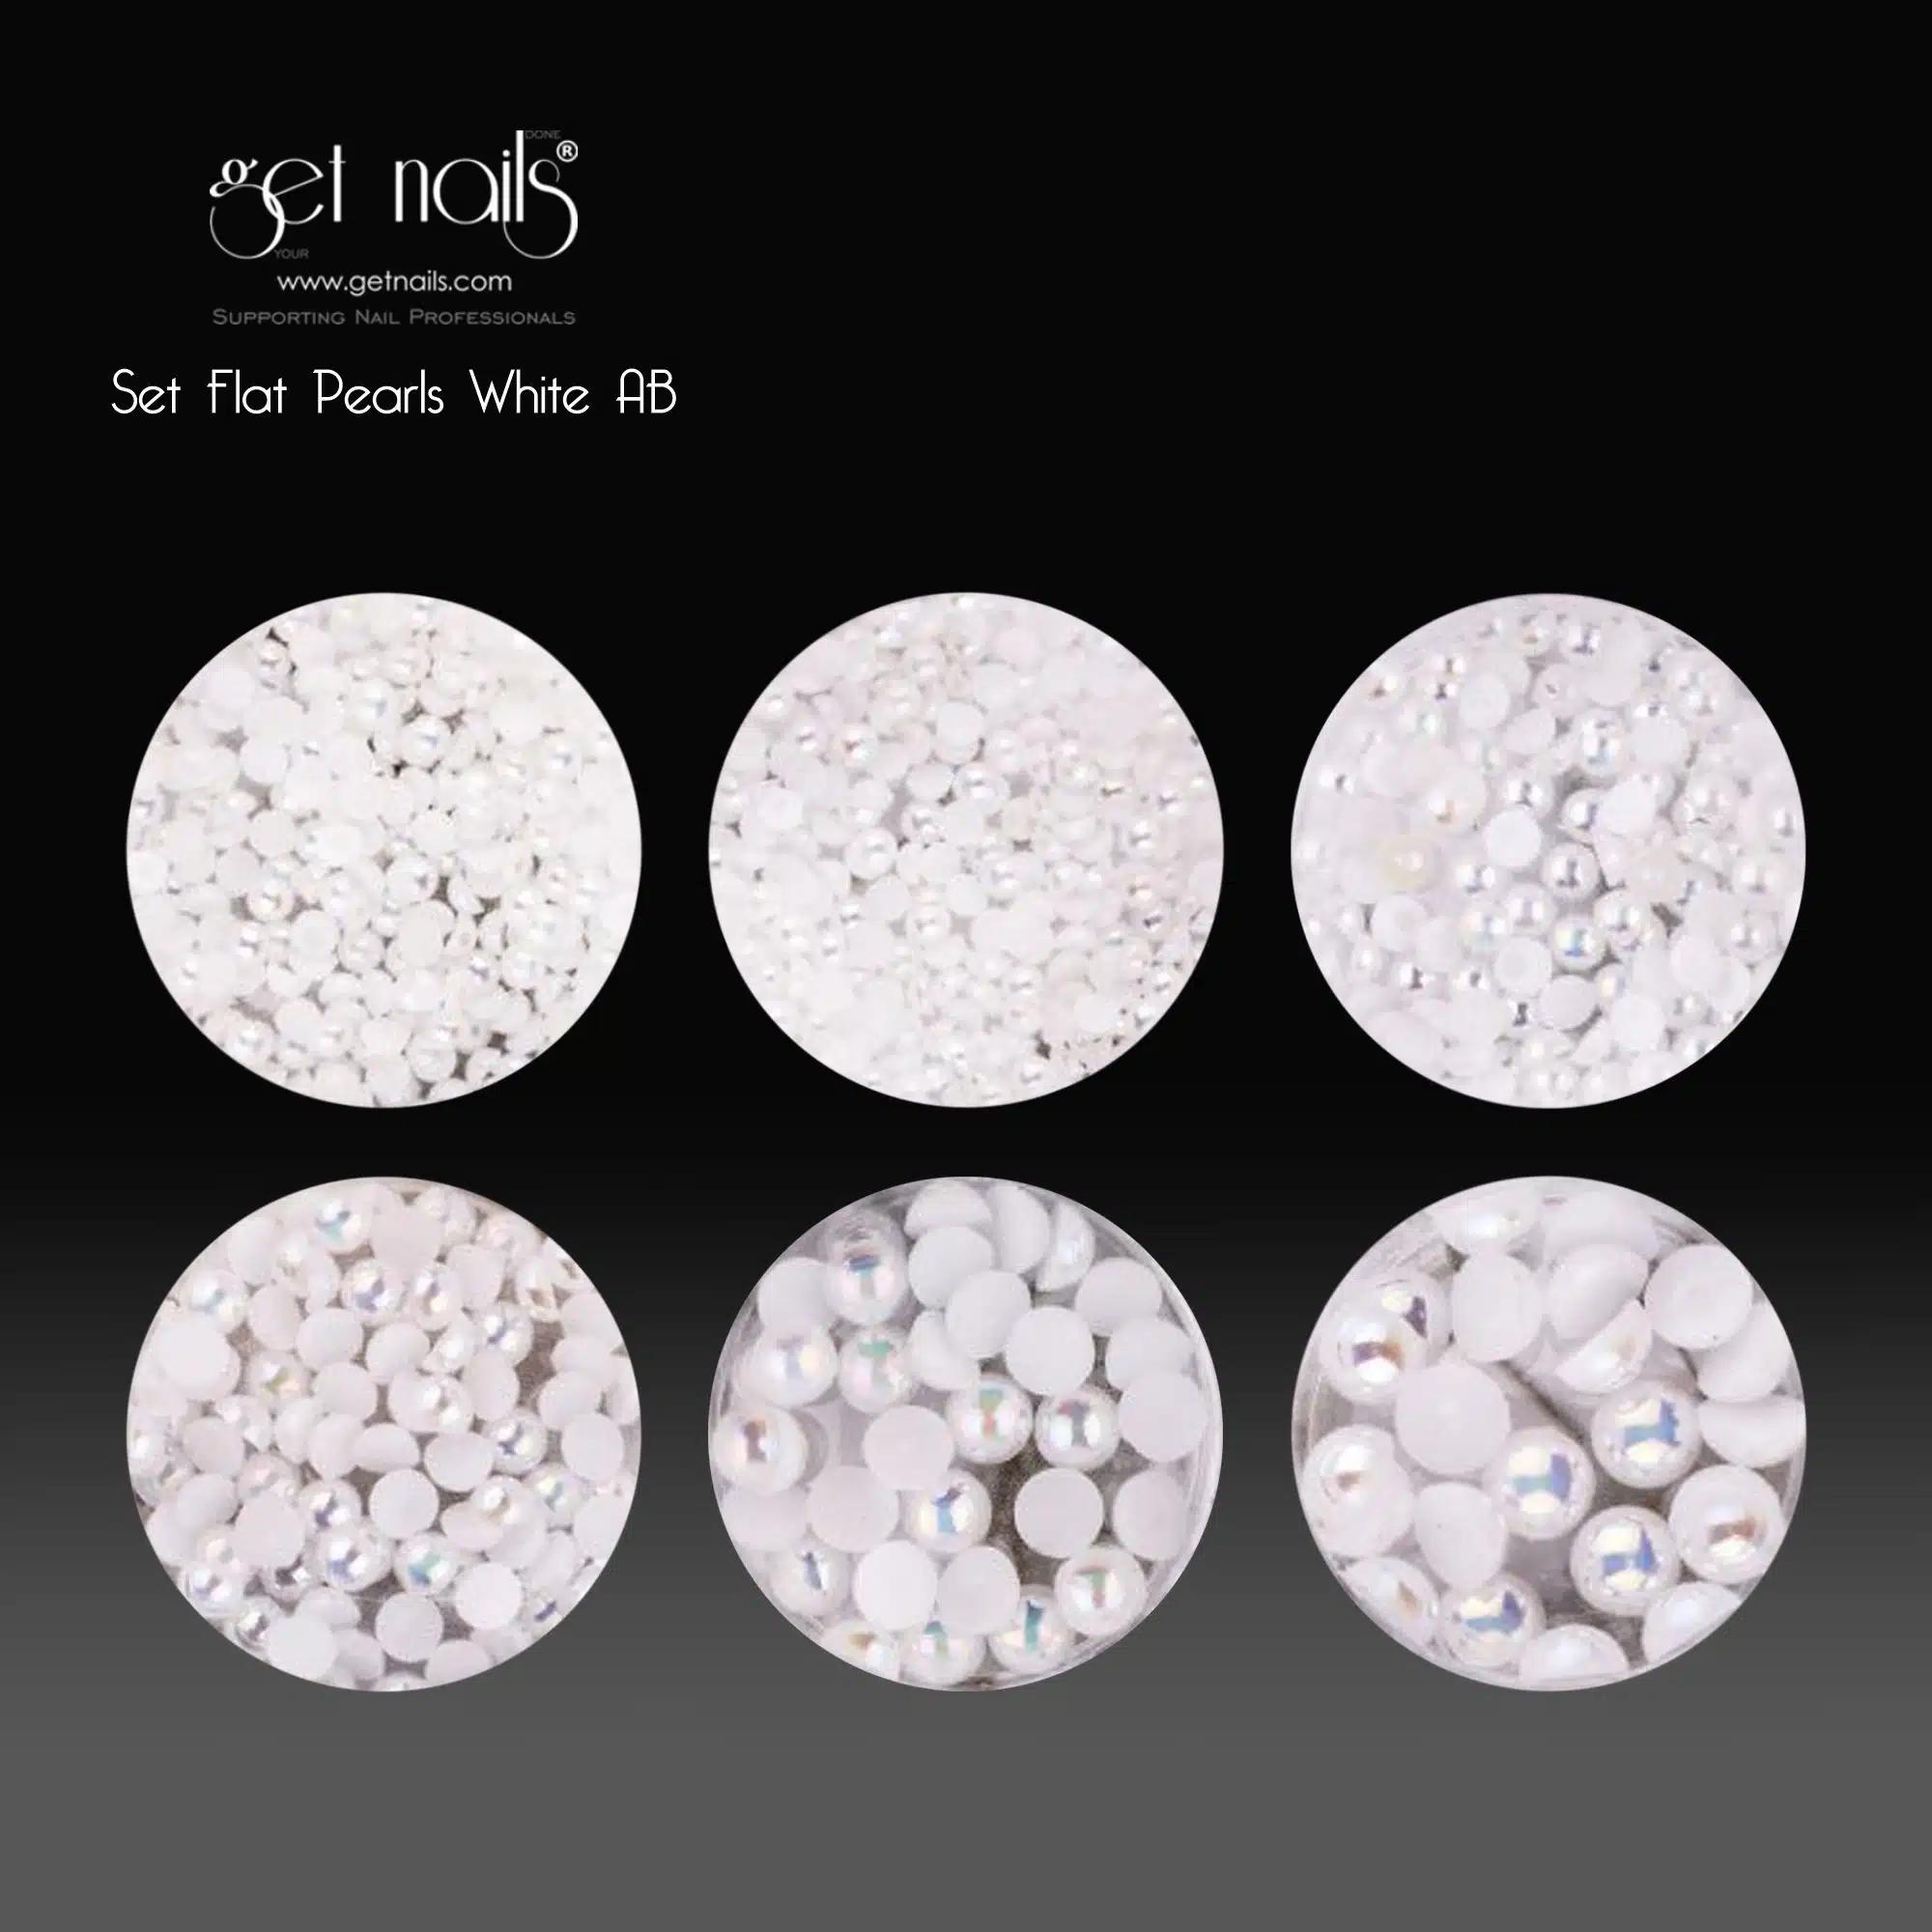 Nabavite Nails Austria - Set Flat Pearls White AB